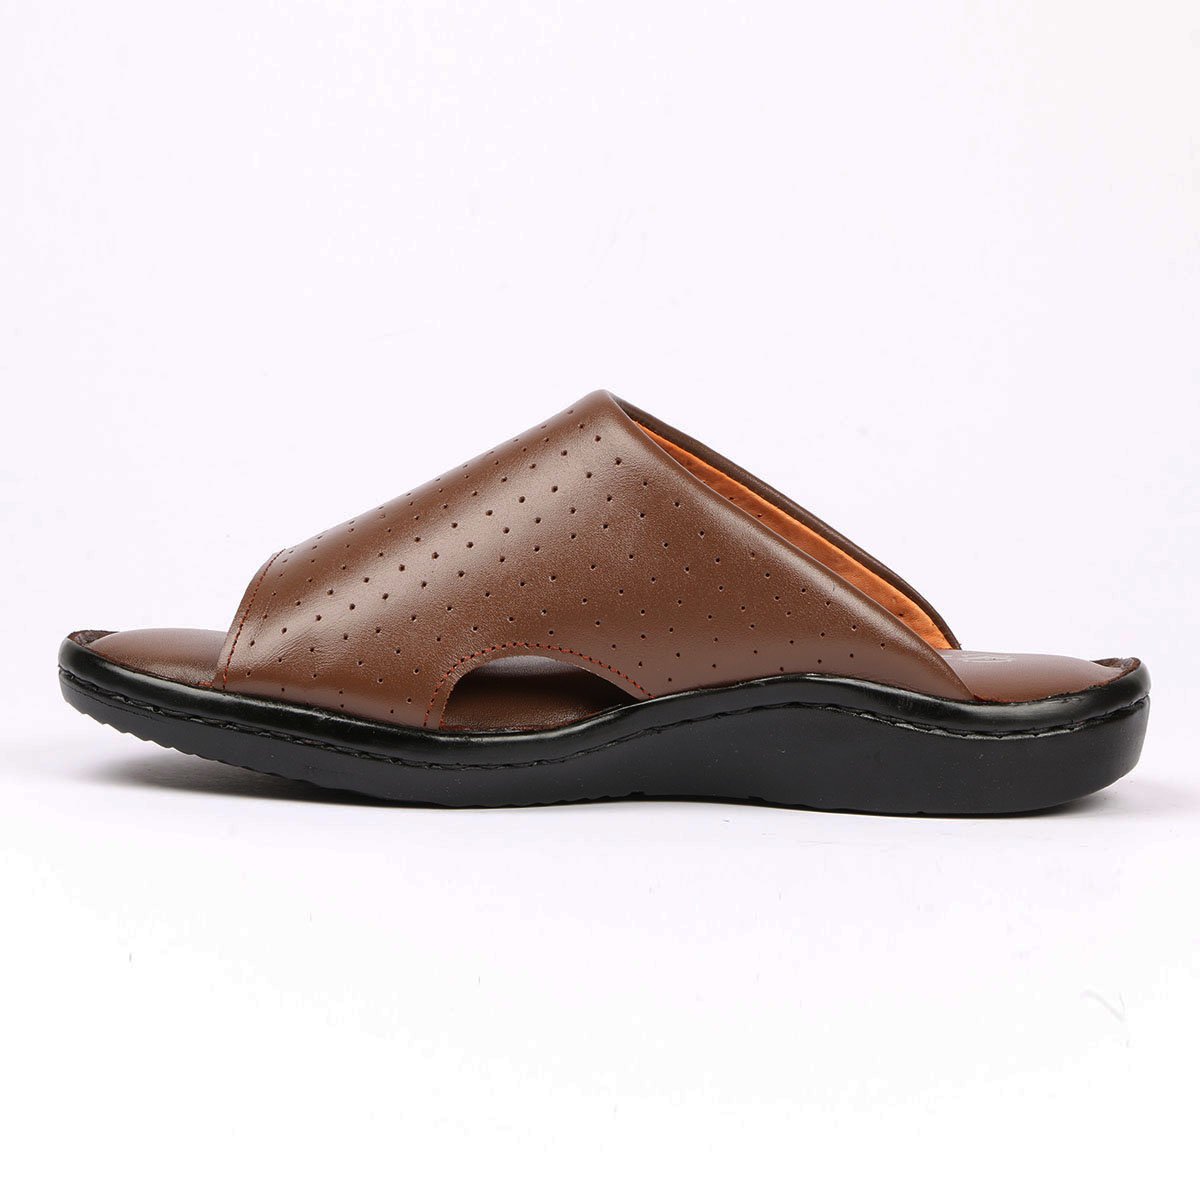 Zays Leather Sandal For Men - ZAYS-A-15